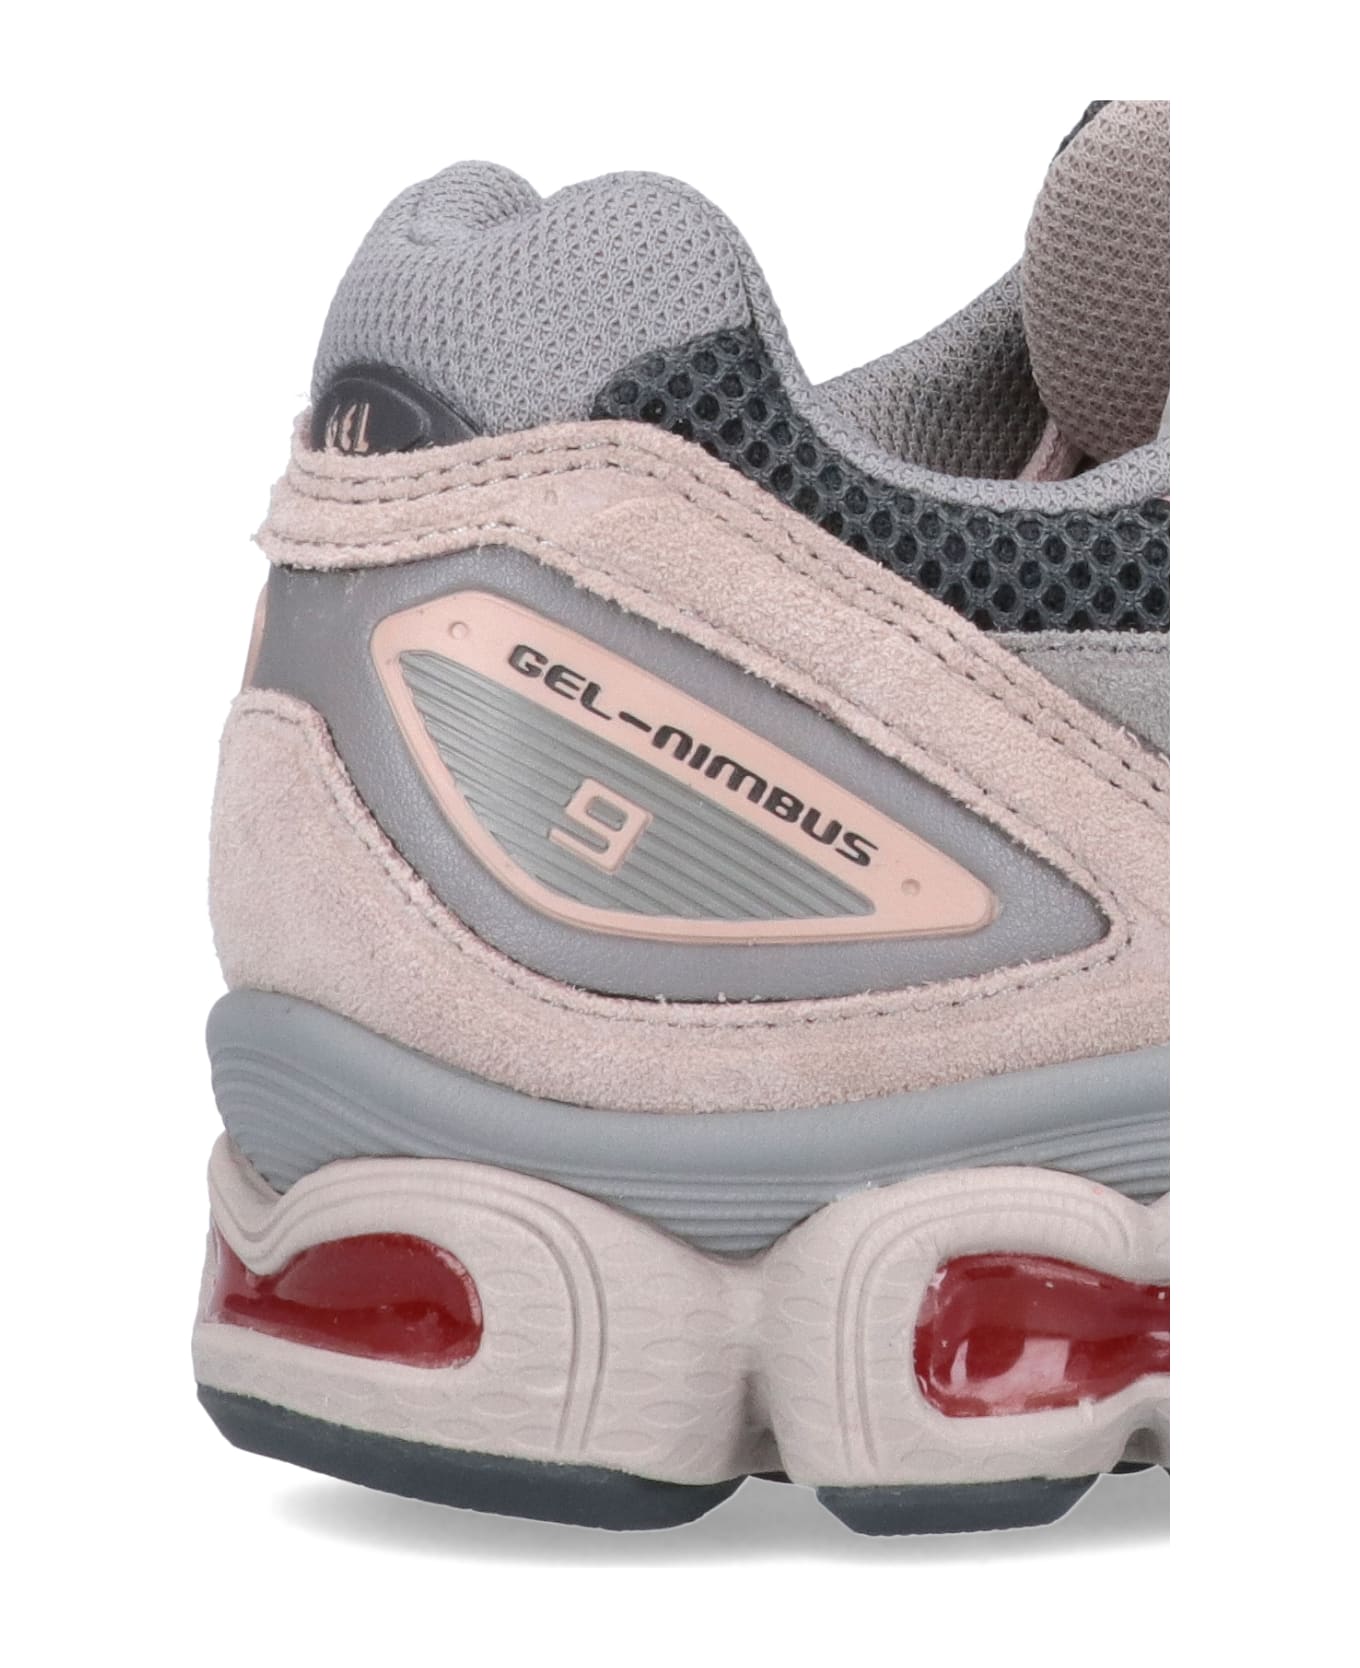 Asics "gel Nimbus 9" Sneakers - Gray